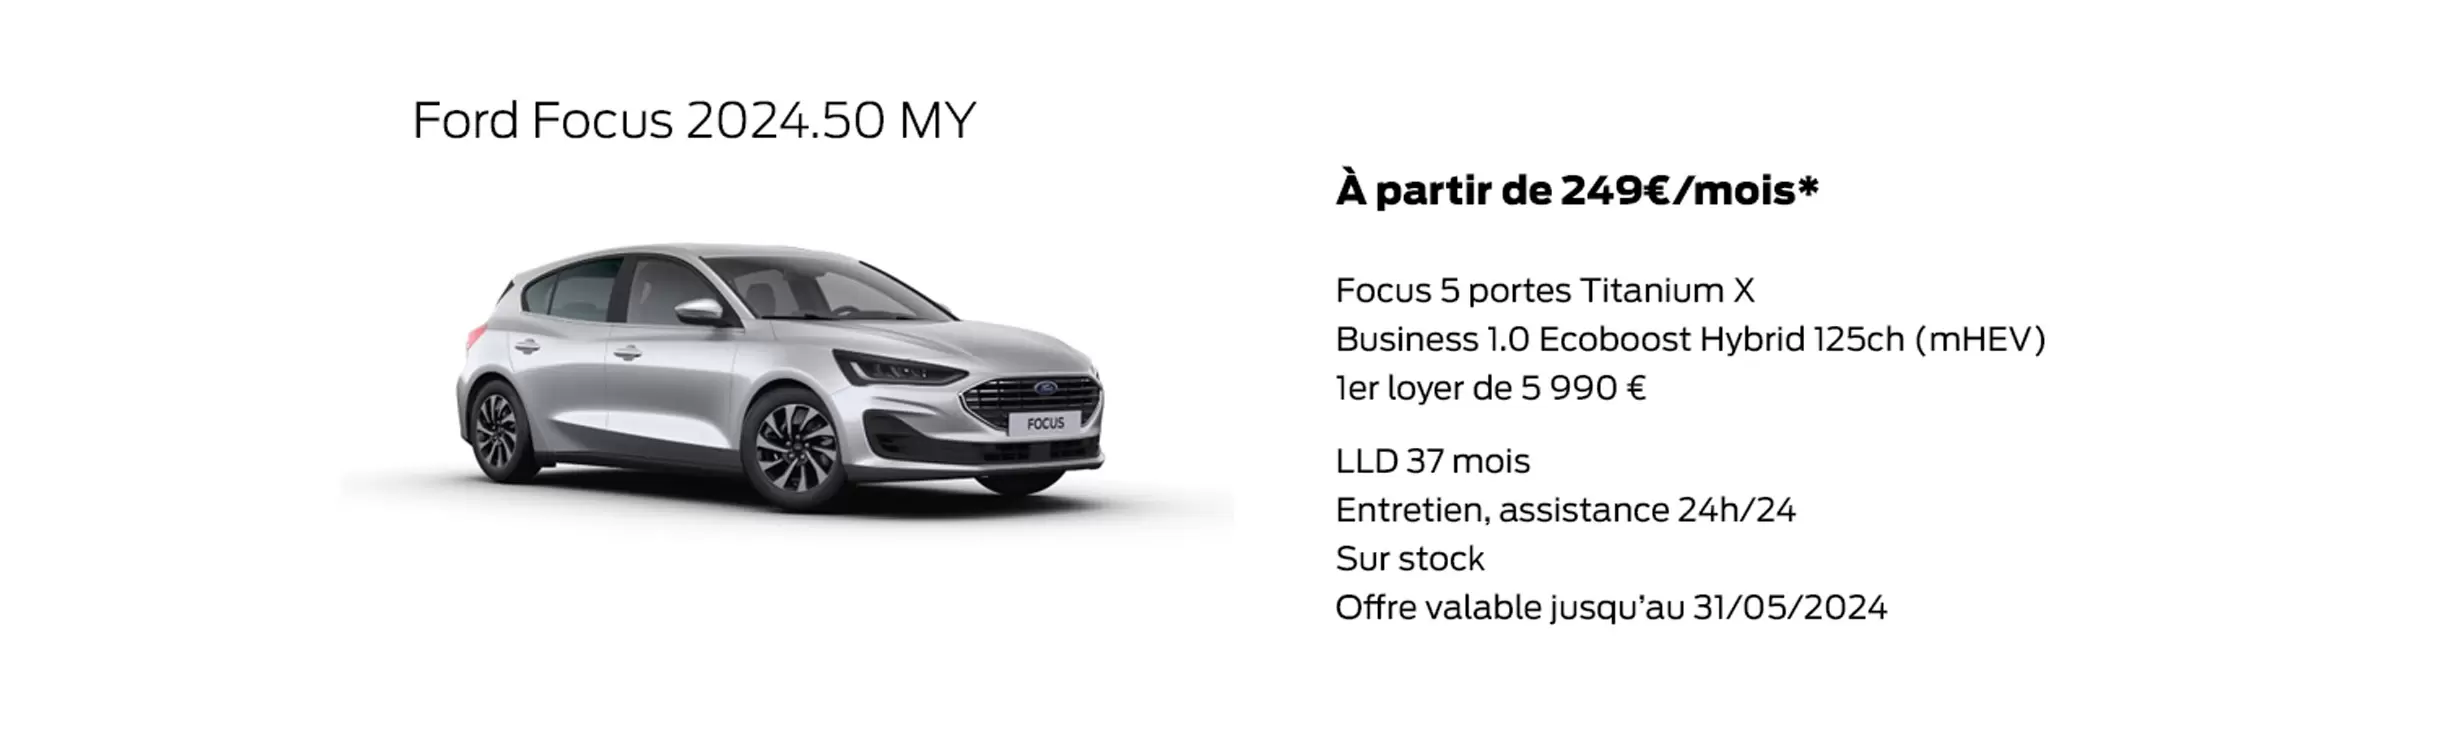 Ford Focus 2024.50 MY À partir de 249€/mois